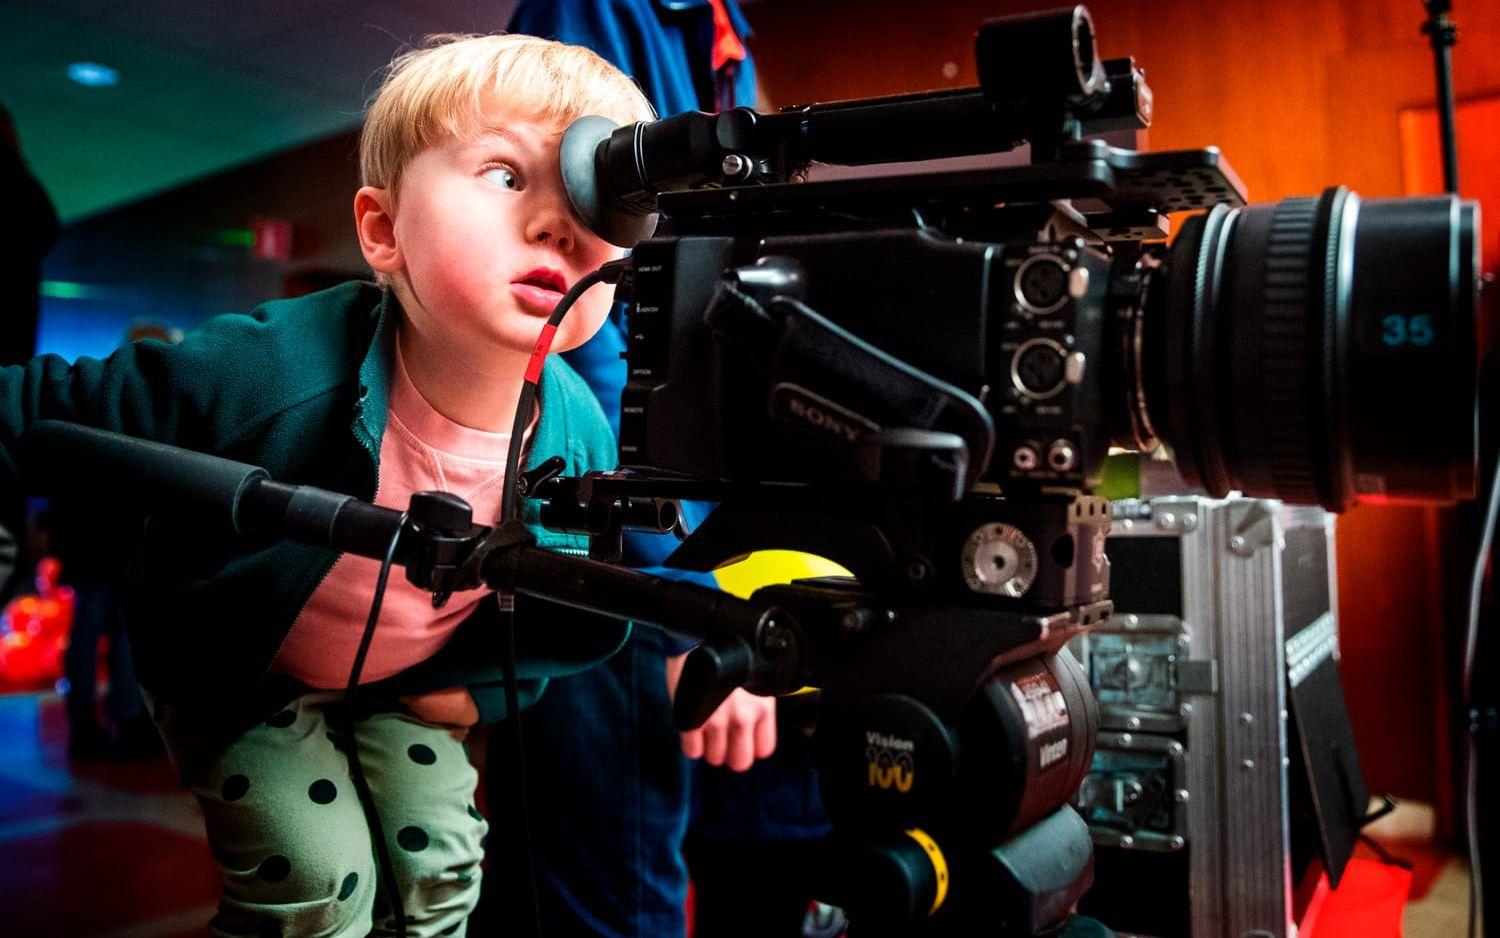 Fullt fokus. Marcel Westlin, 3 år, agerade fotograf på Lilla filmfestivalen på Draken. 